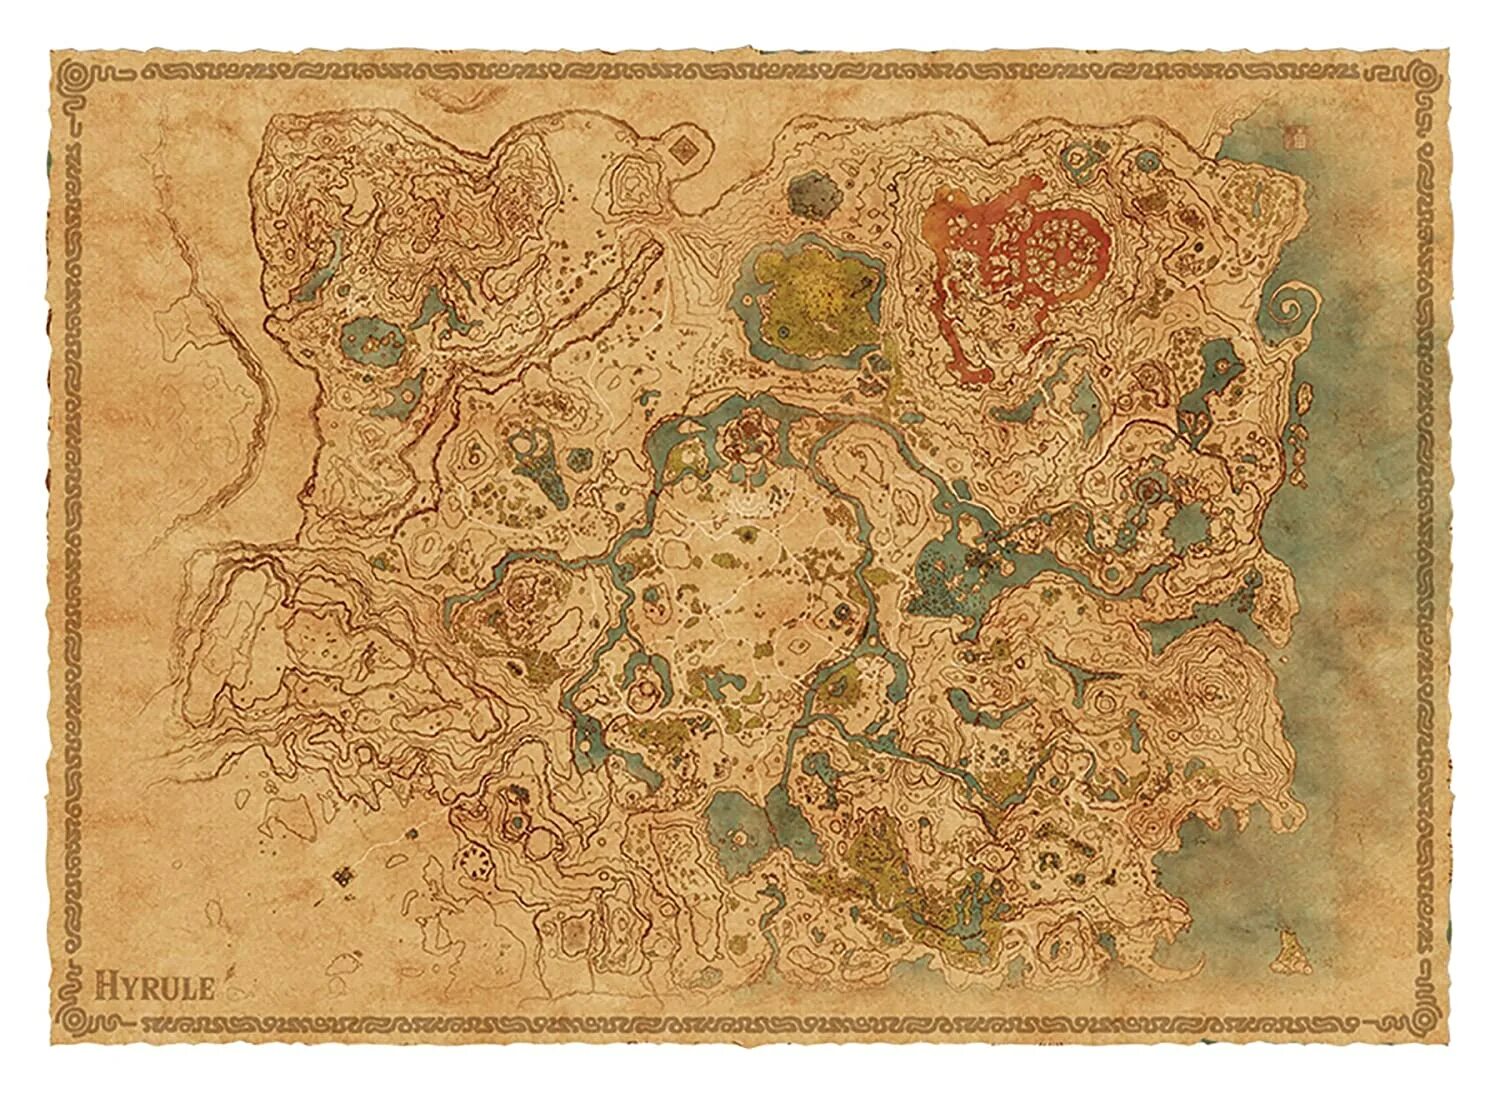 Карта Хайрулла Zelda Breath of the Wild. Карта Зельда Breath of the Wild. The Legend of Zelda Breath of the Wild Map. Maps wild